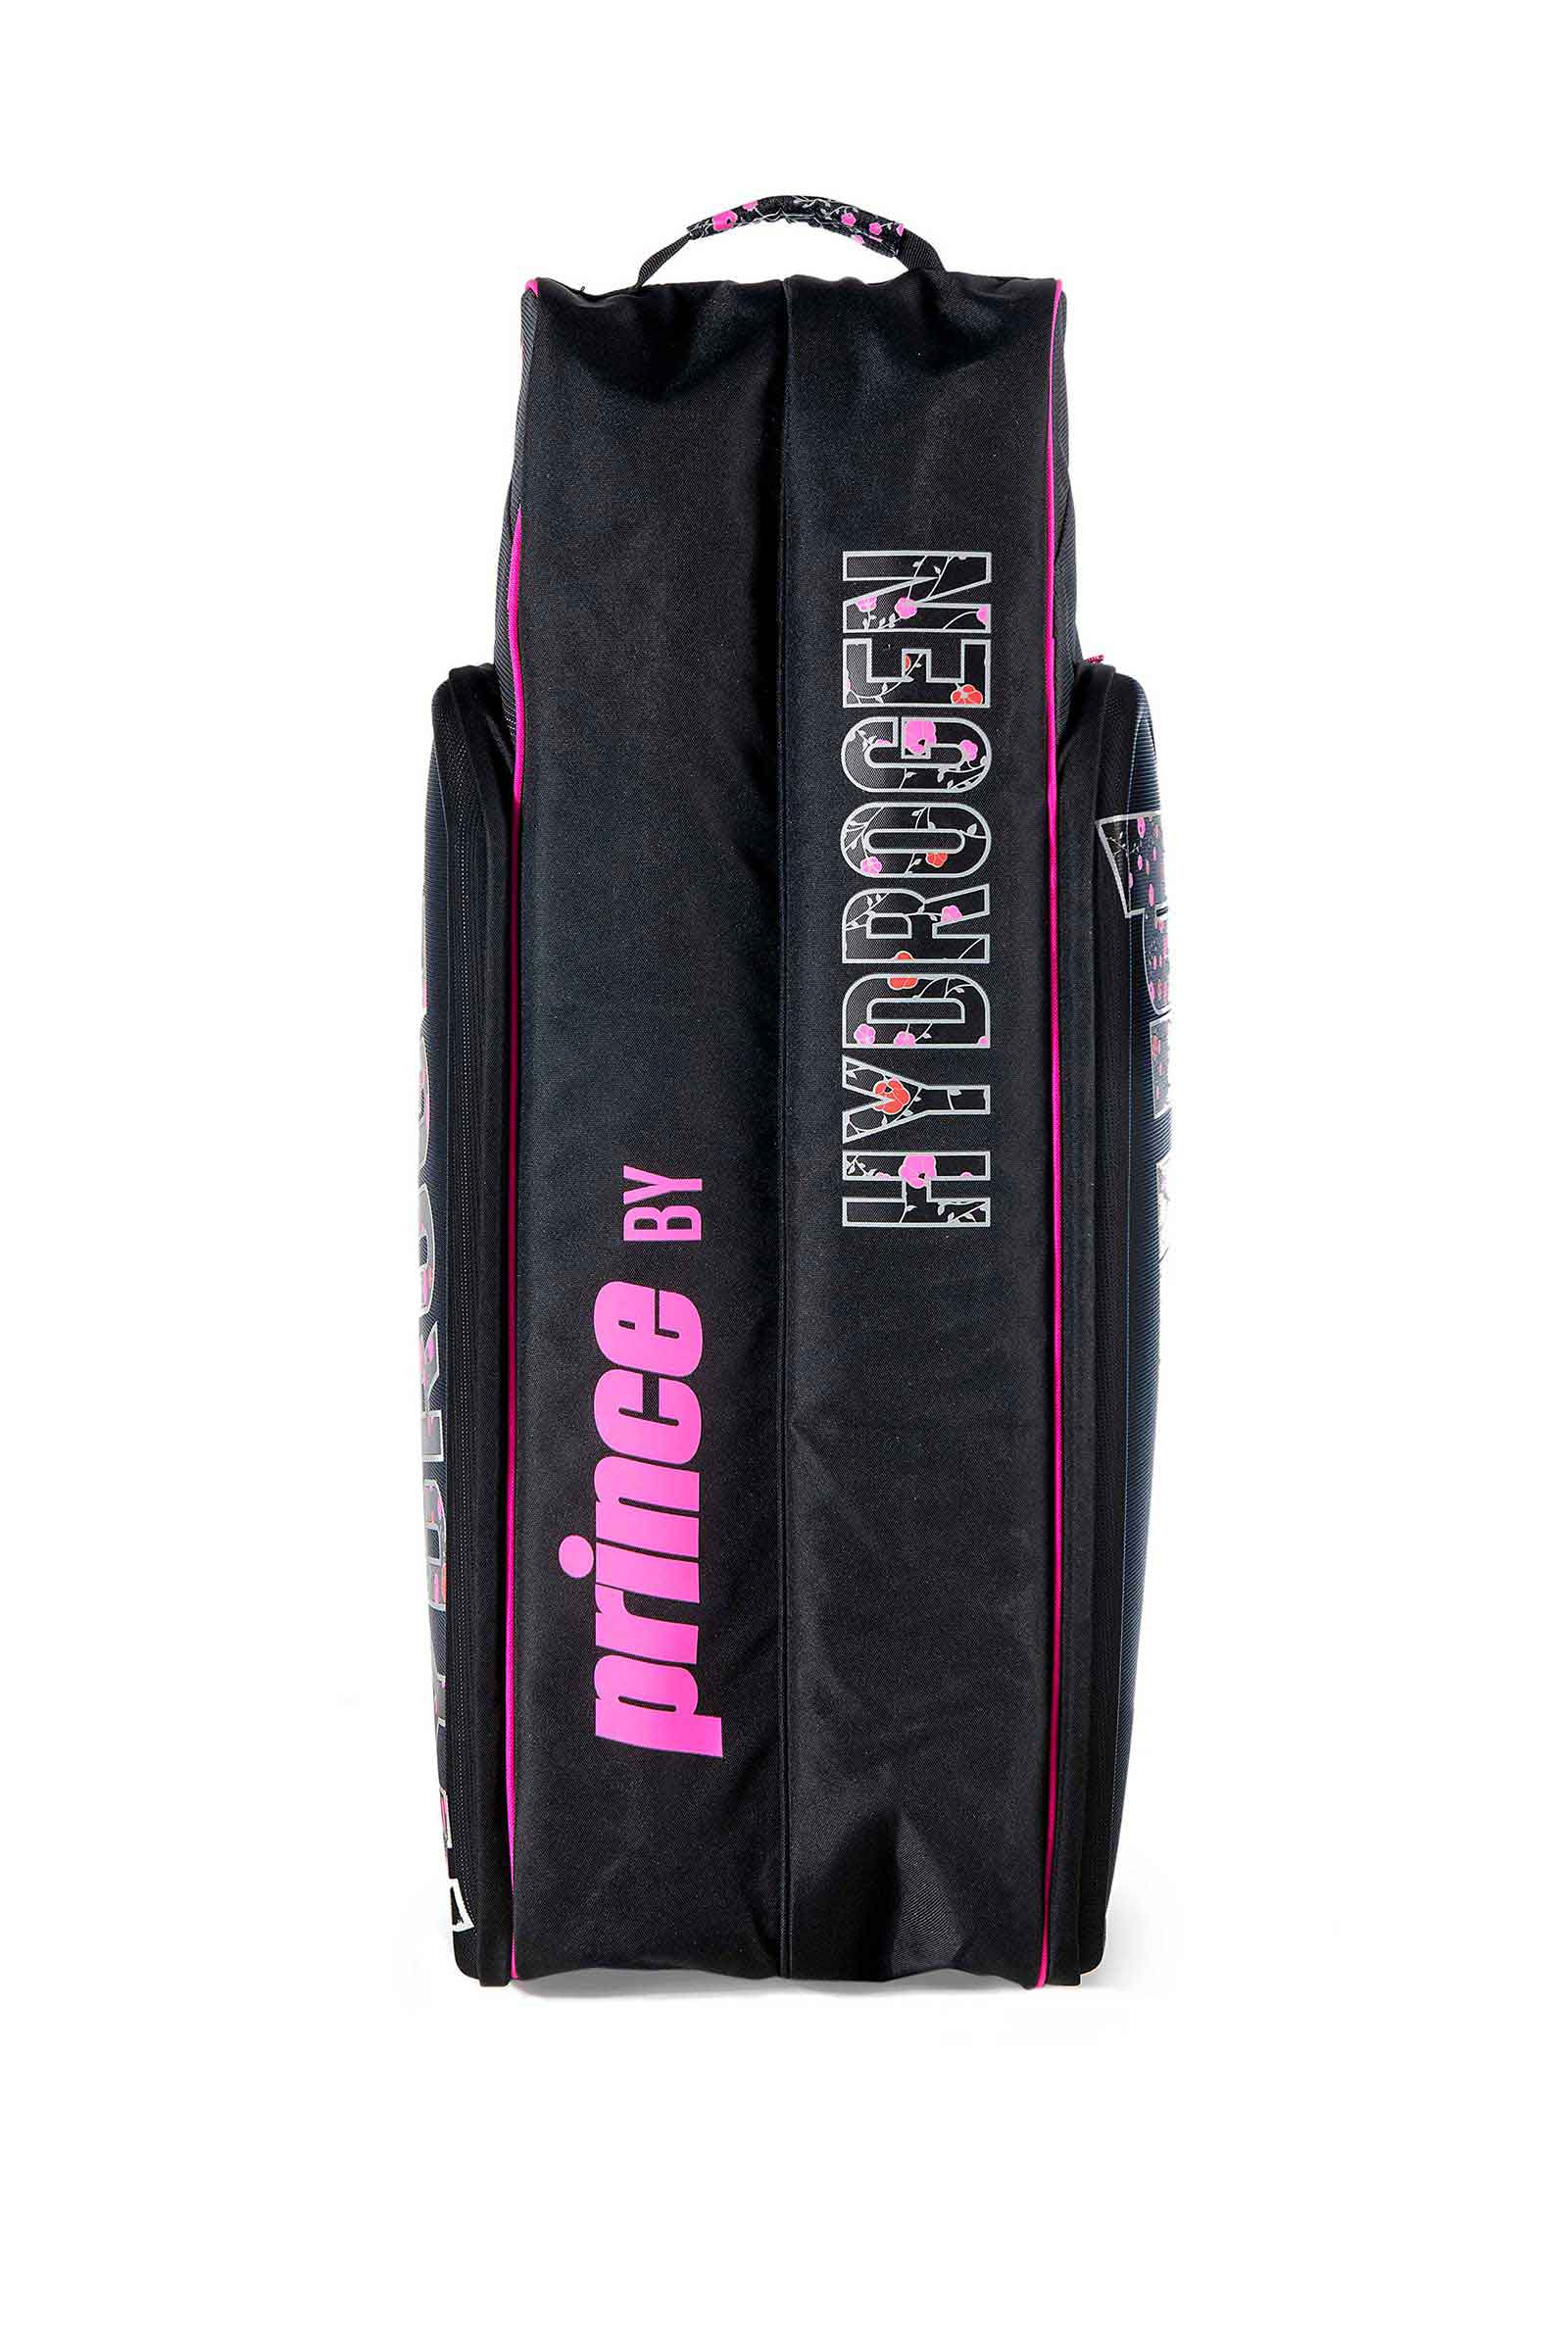 LADY MARY 9 RACKETS BAG PRINCE BY HYDROGEN - BLACK,FUCHSIA FLUO - Abbigliamento sportivo | Hydrogen